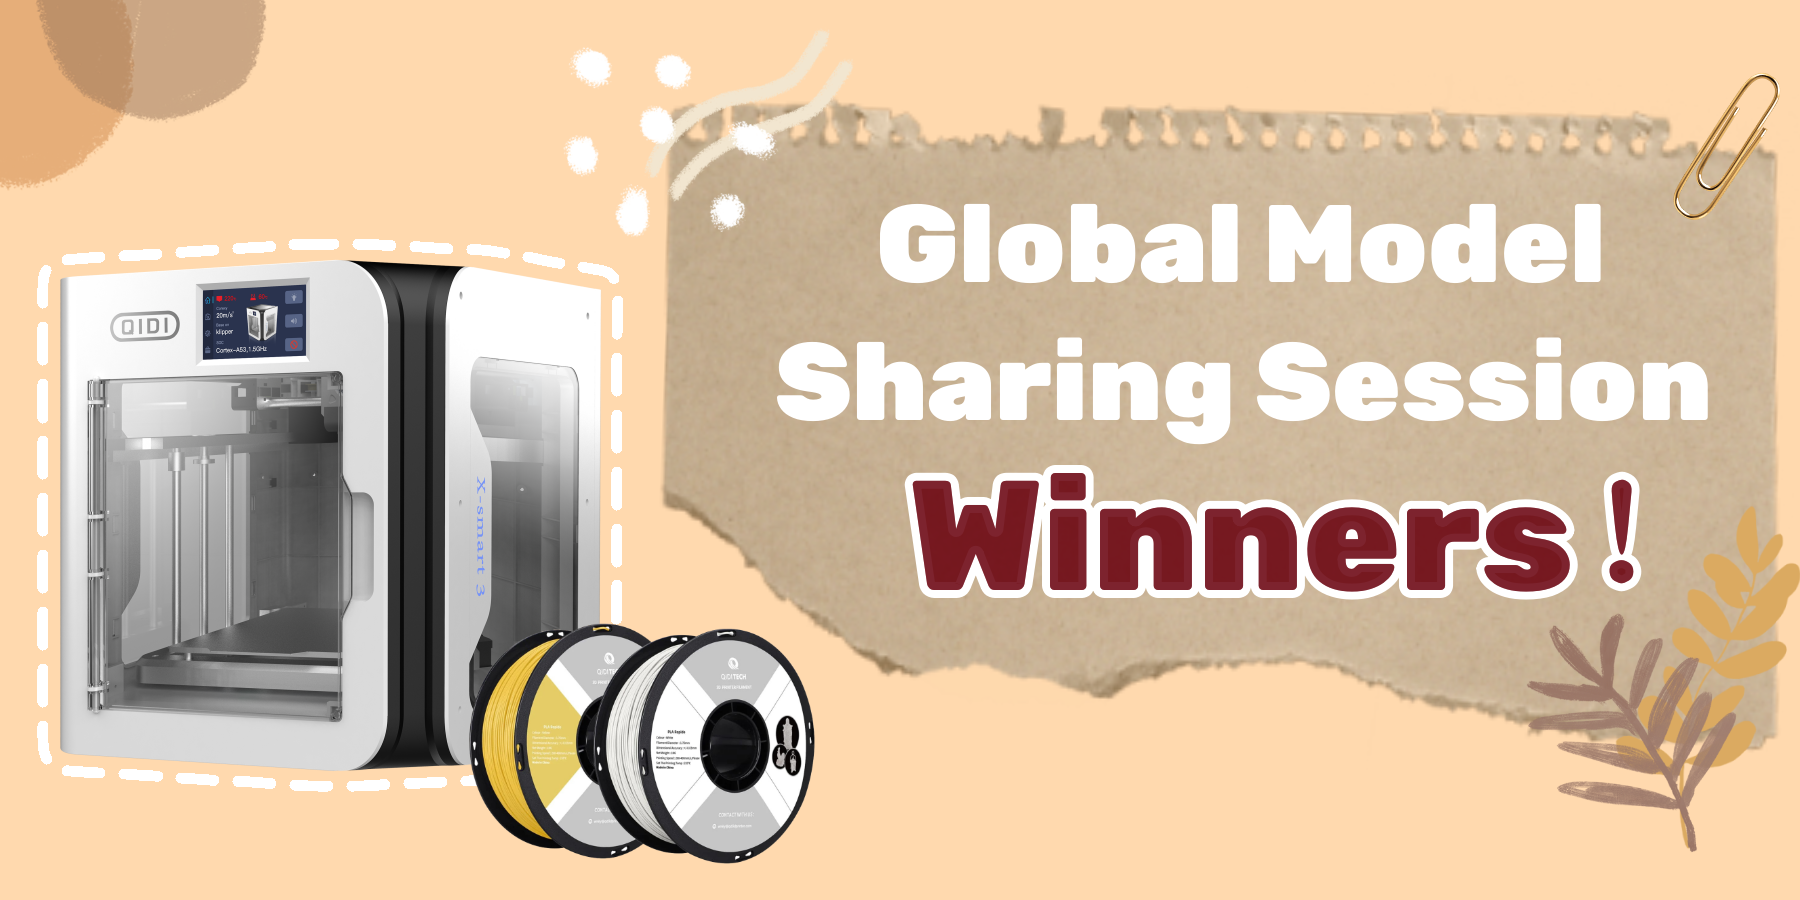 Ergebnisse der globalen Model-Sharing-Sitzung bekannt gegeben